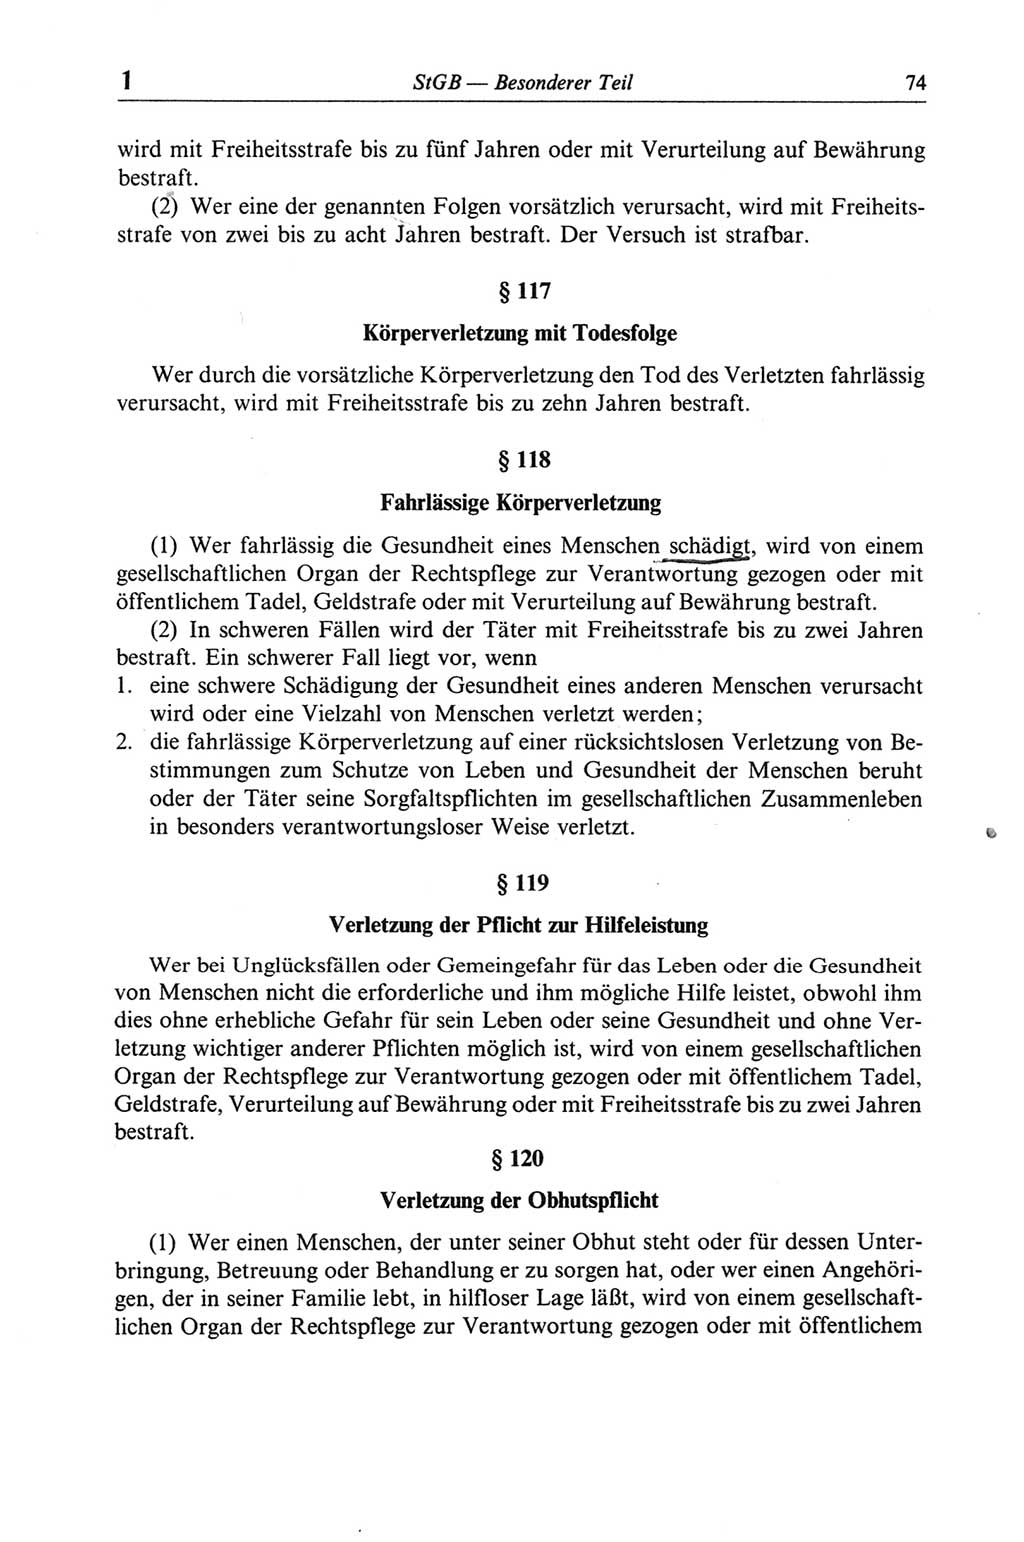 Strafgesetzbuch (StGB) der Deutschen Demokratischen Republik (DDR) und angrenzende Gesetze und Bestimmungen 1968, Seite 74 (StGB Ges. Best. DDR 1968, S. 74)